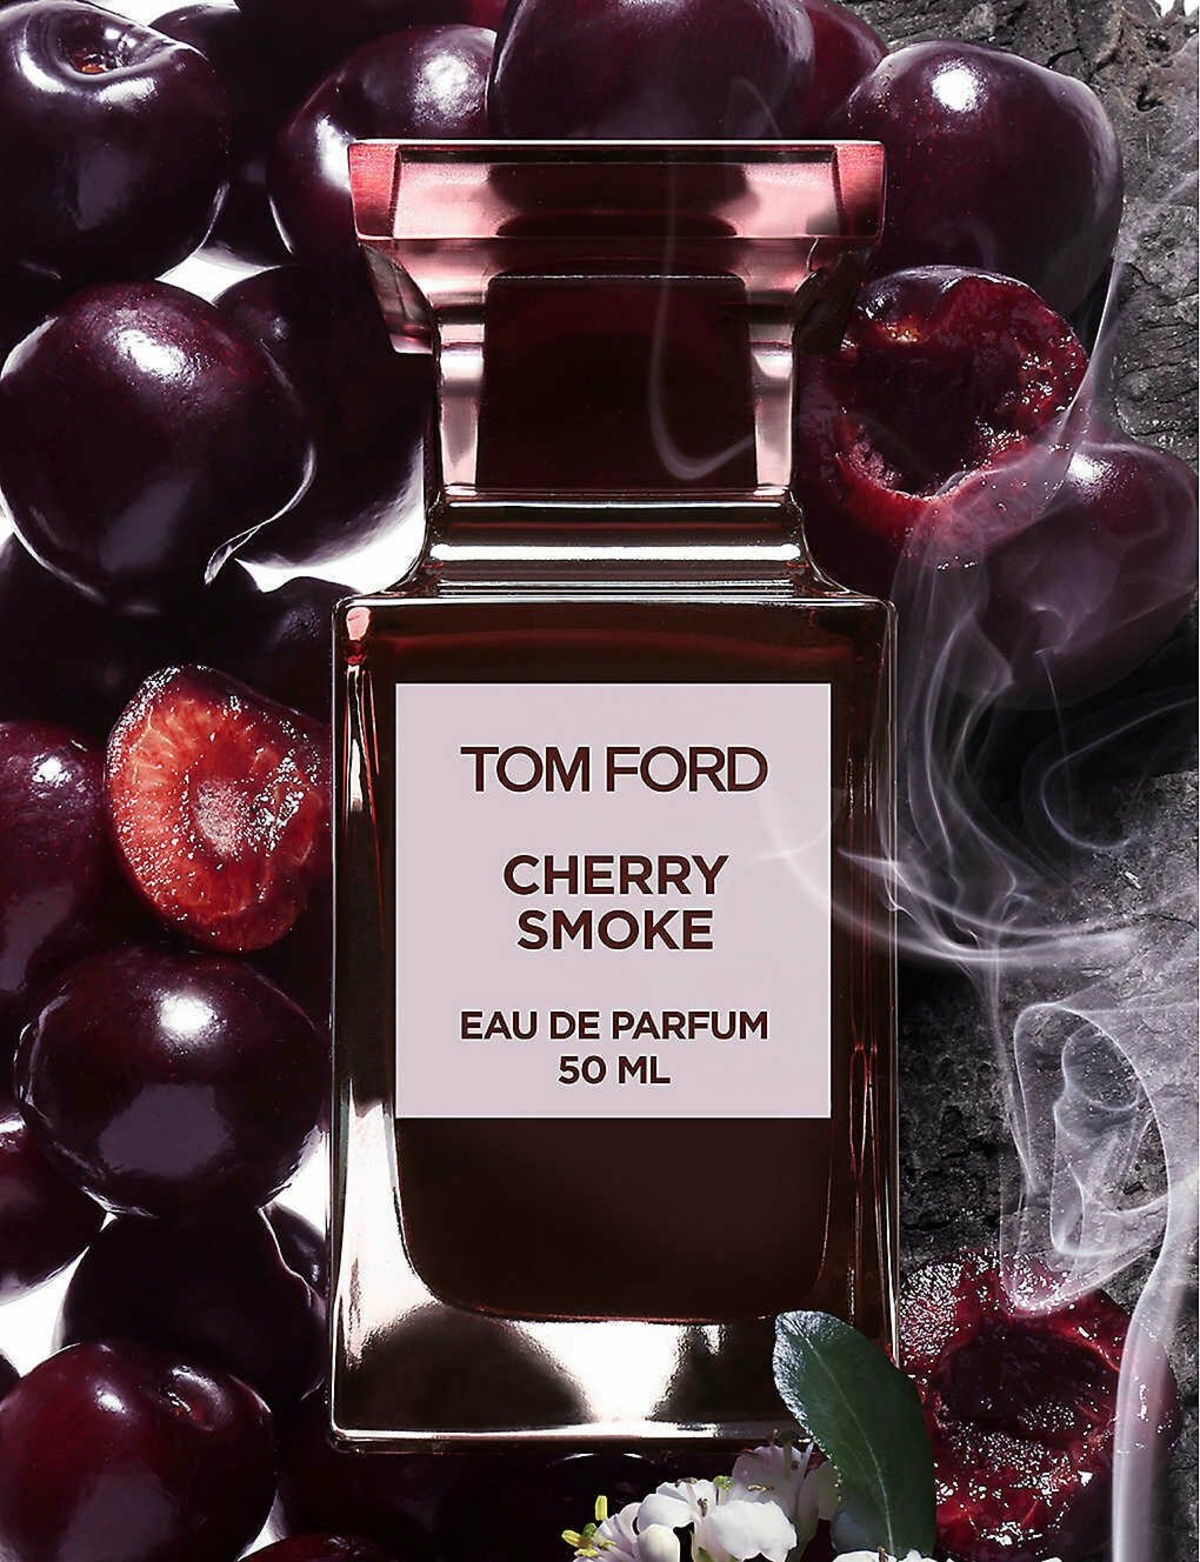 https://www.parfumo.com/Perfumes/Tom_Ford/cherry-smoke